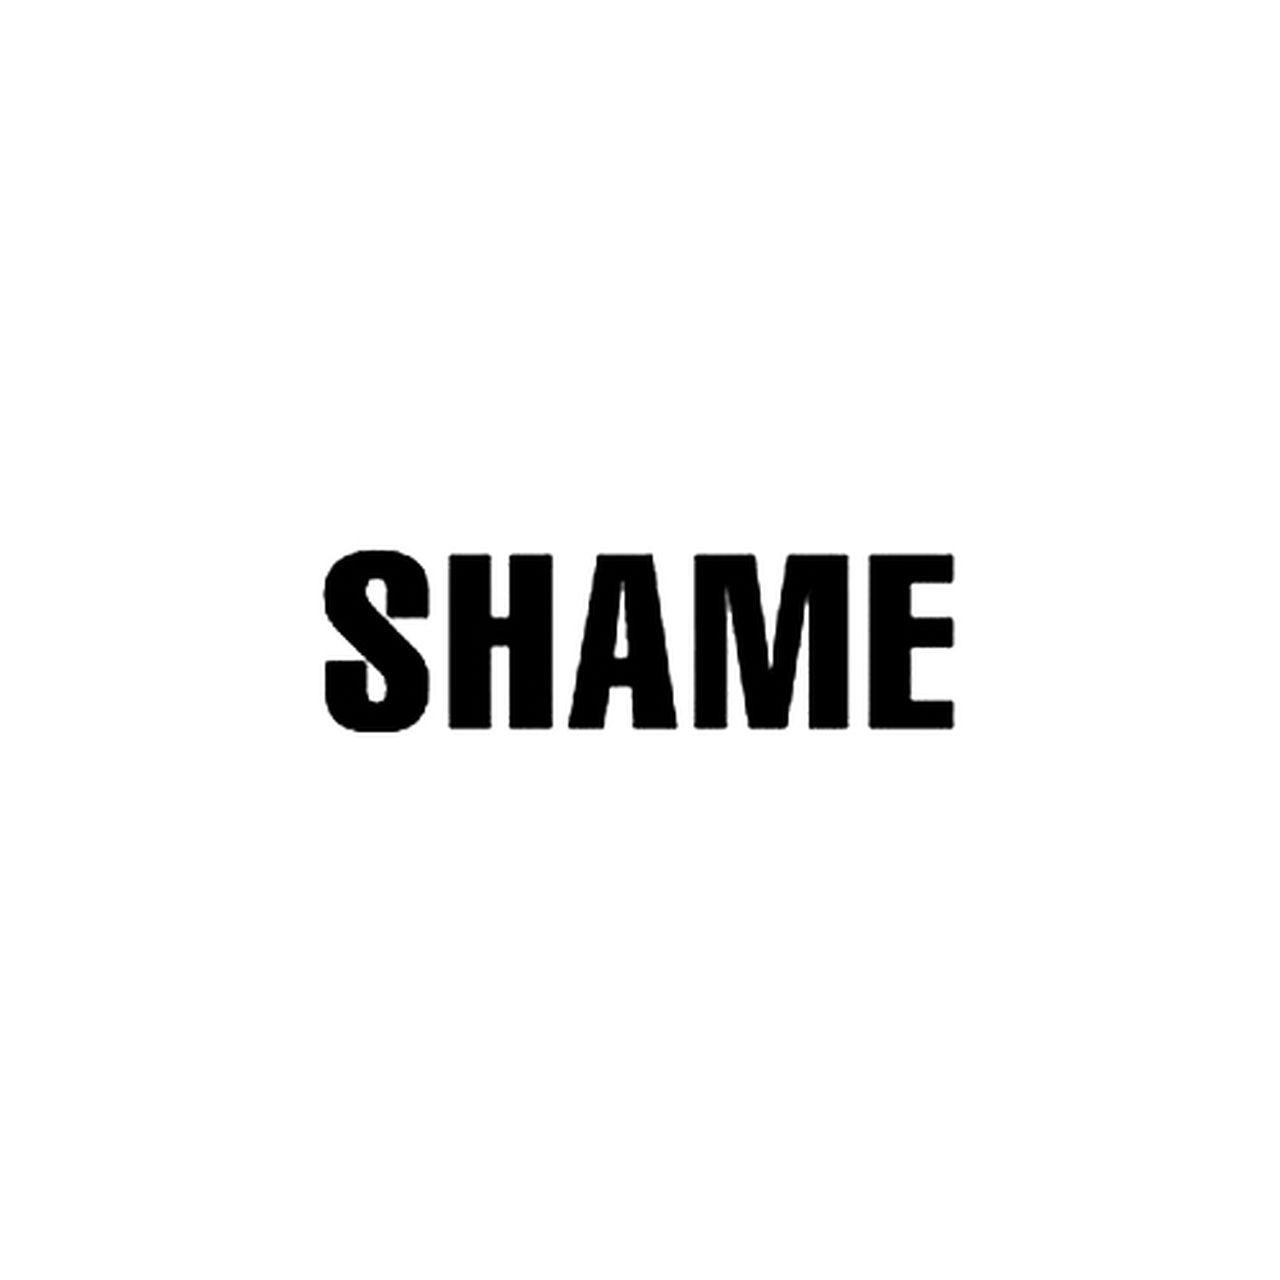 Shame Logo - Shame Rock Band Logo Decal